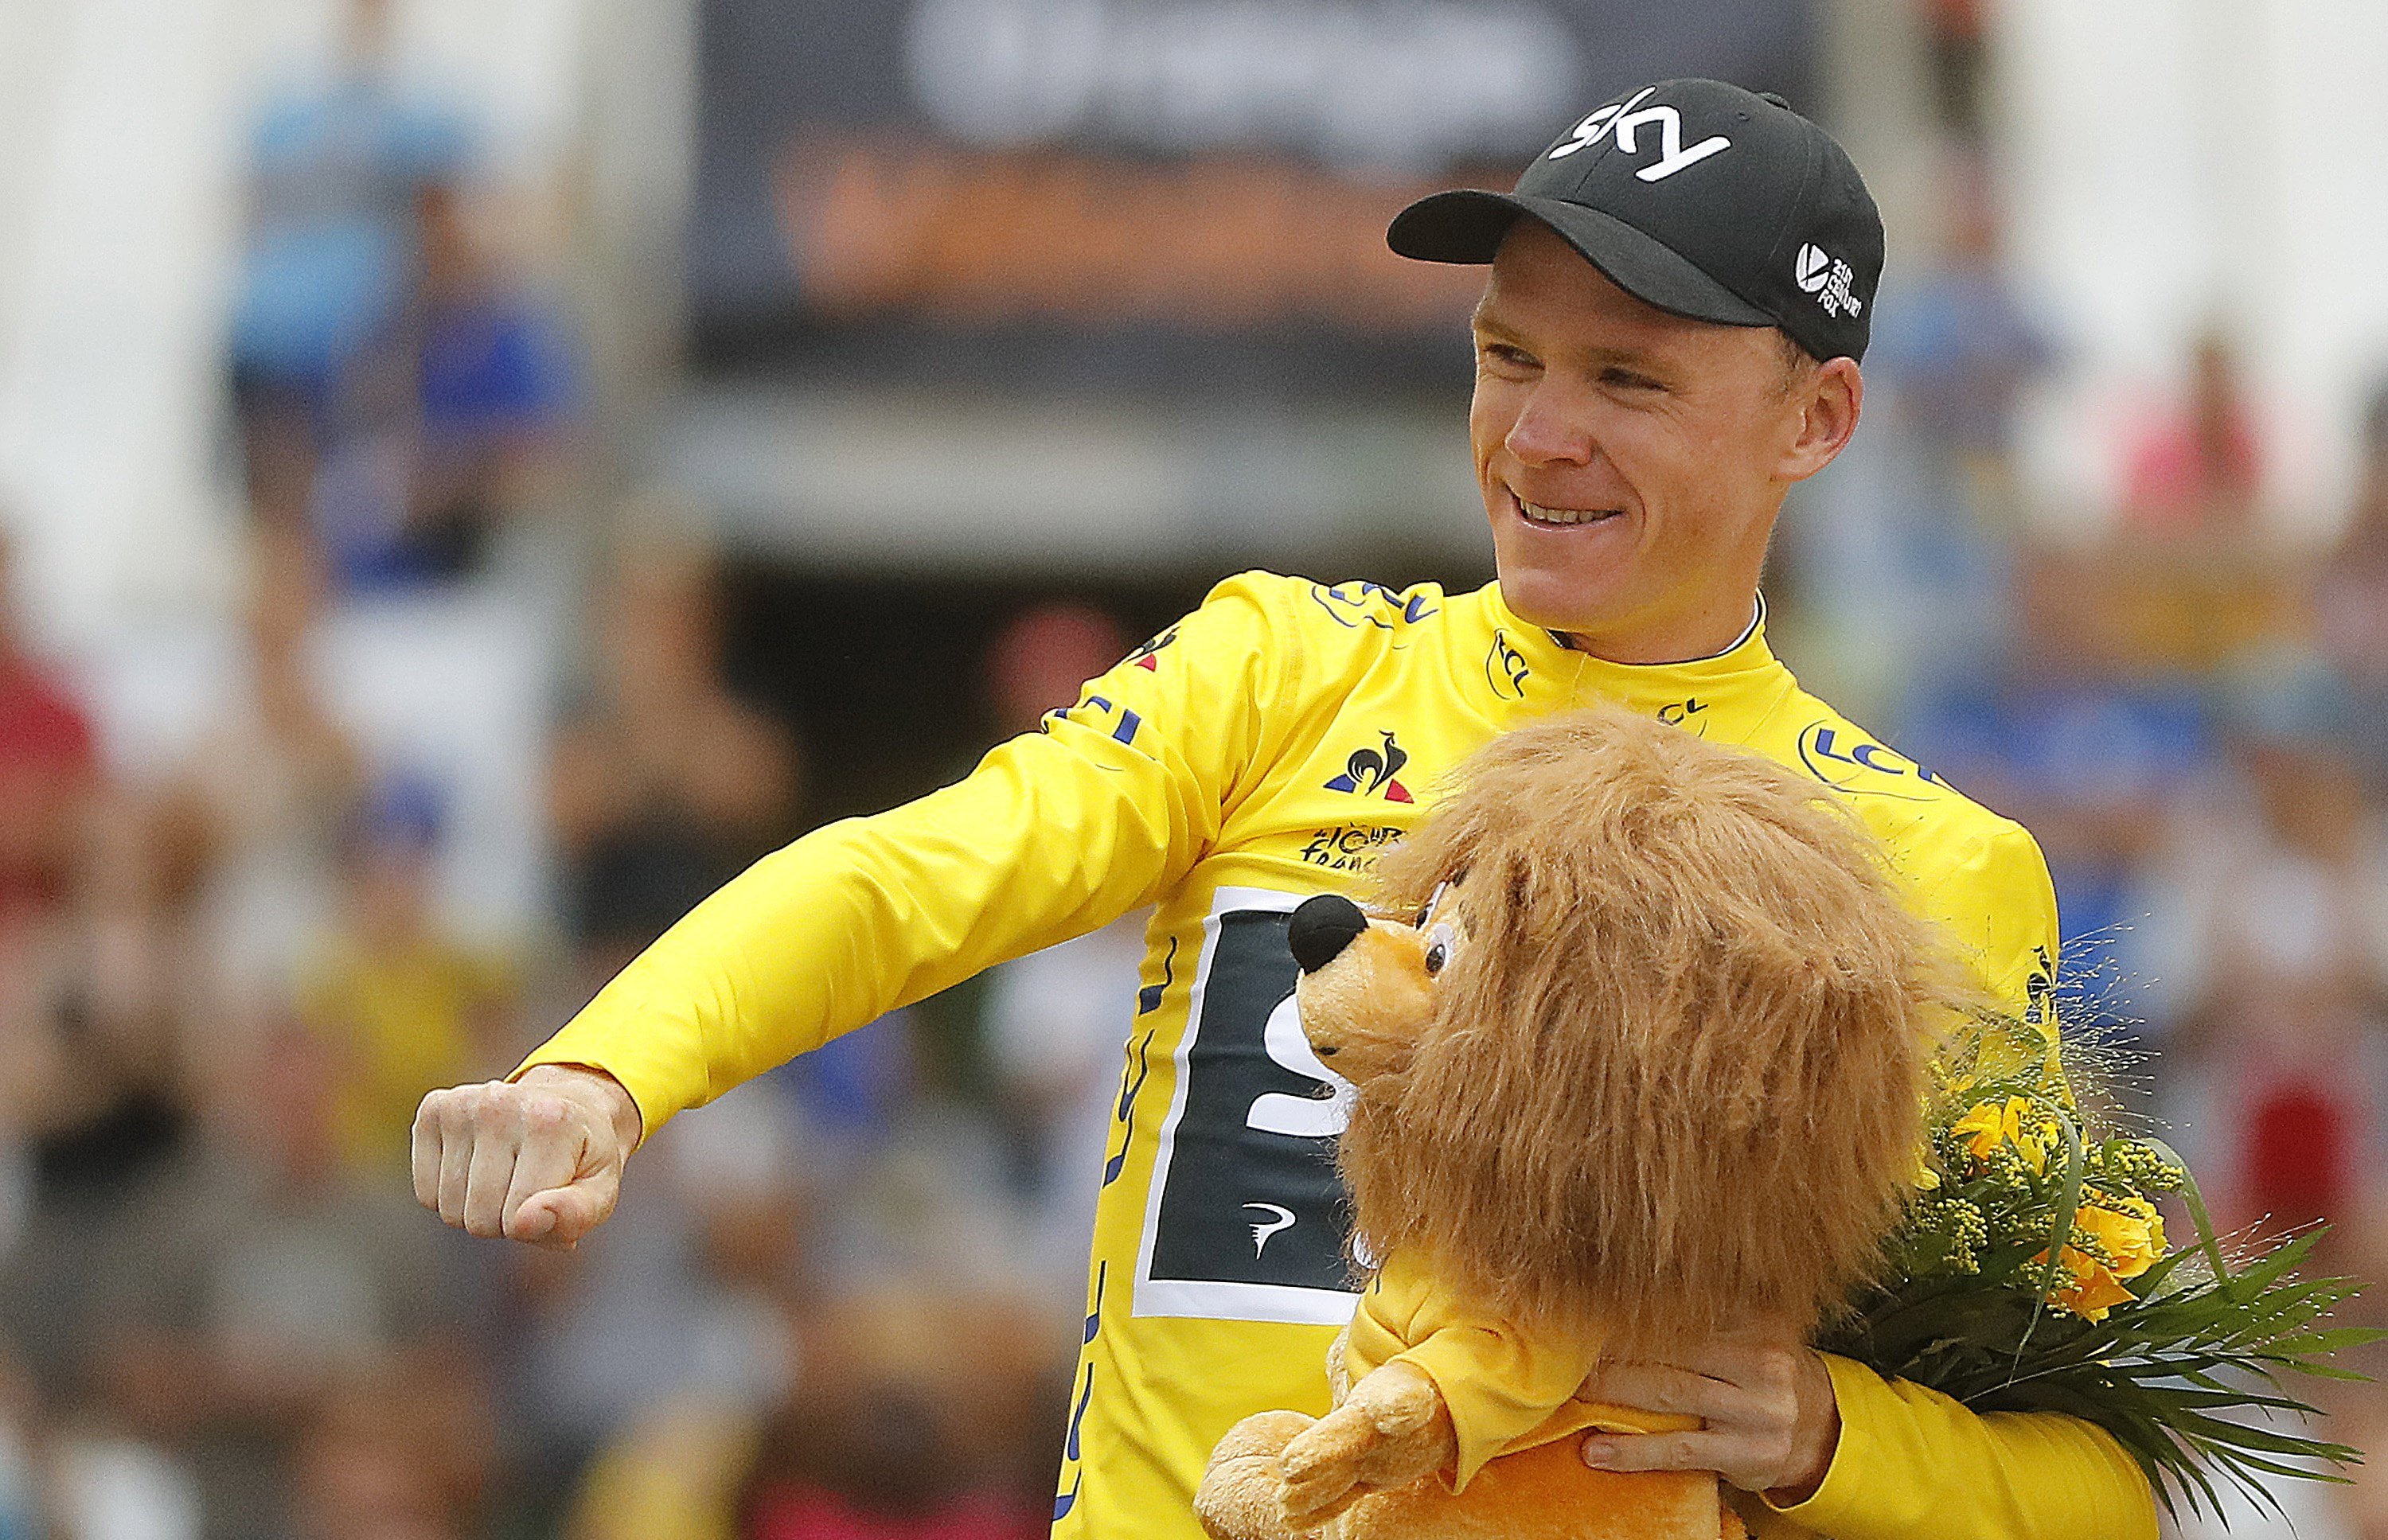 El Tour de Francia veta la participación de Chris Froome por dopaje